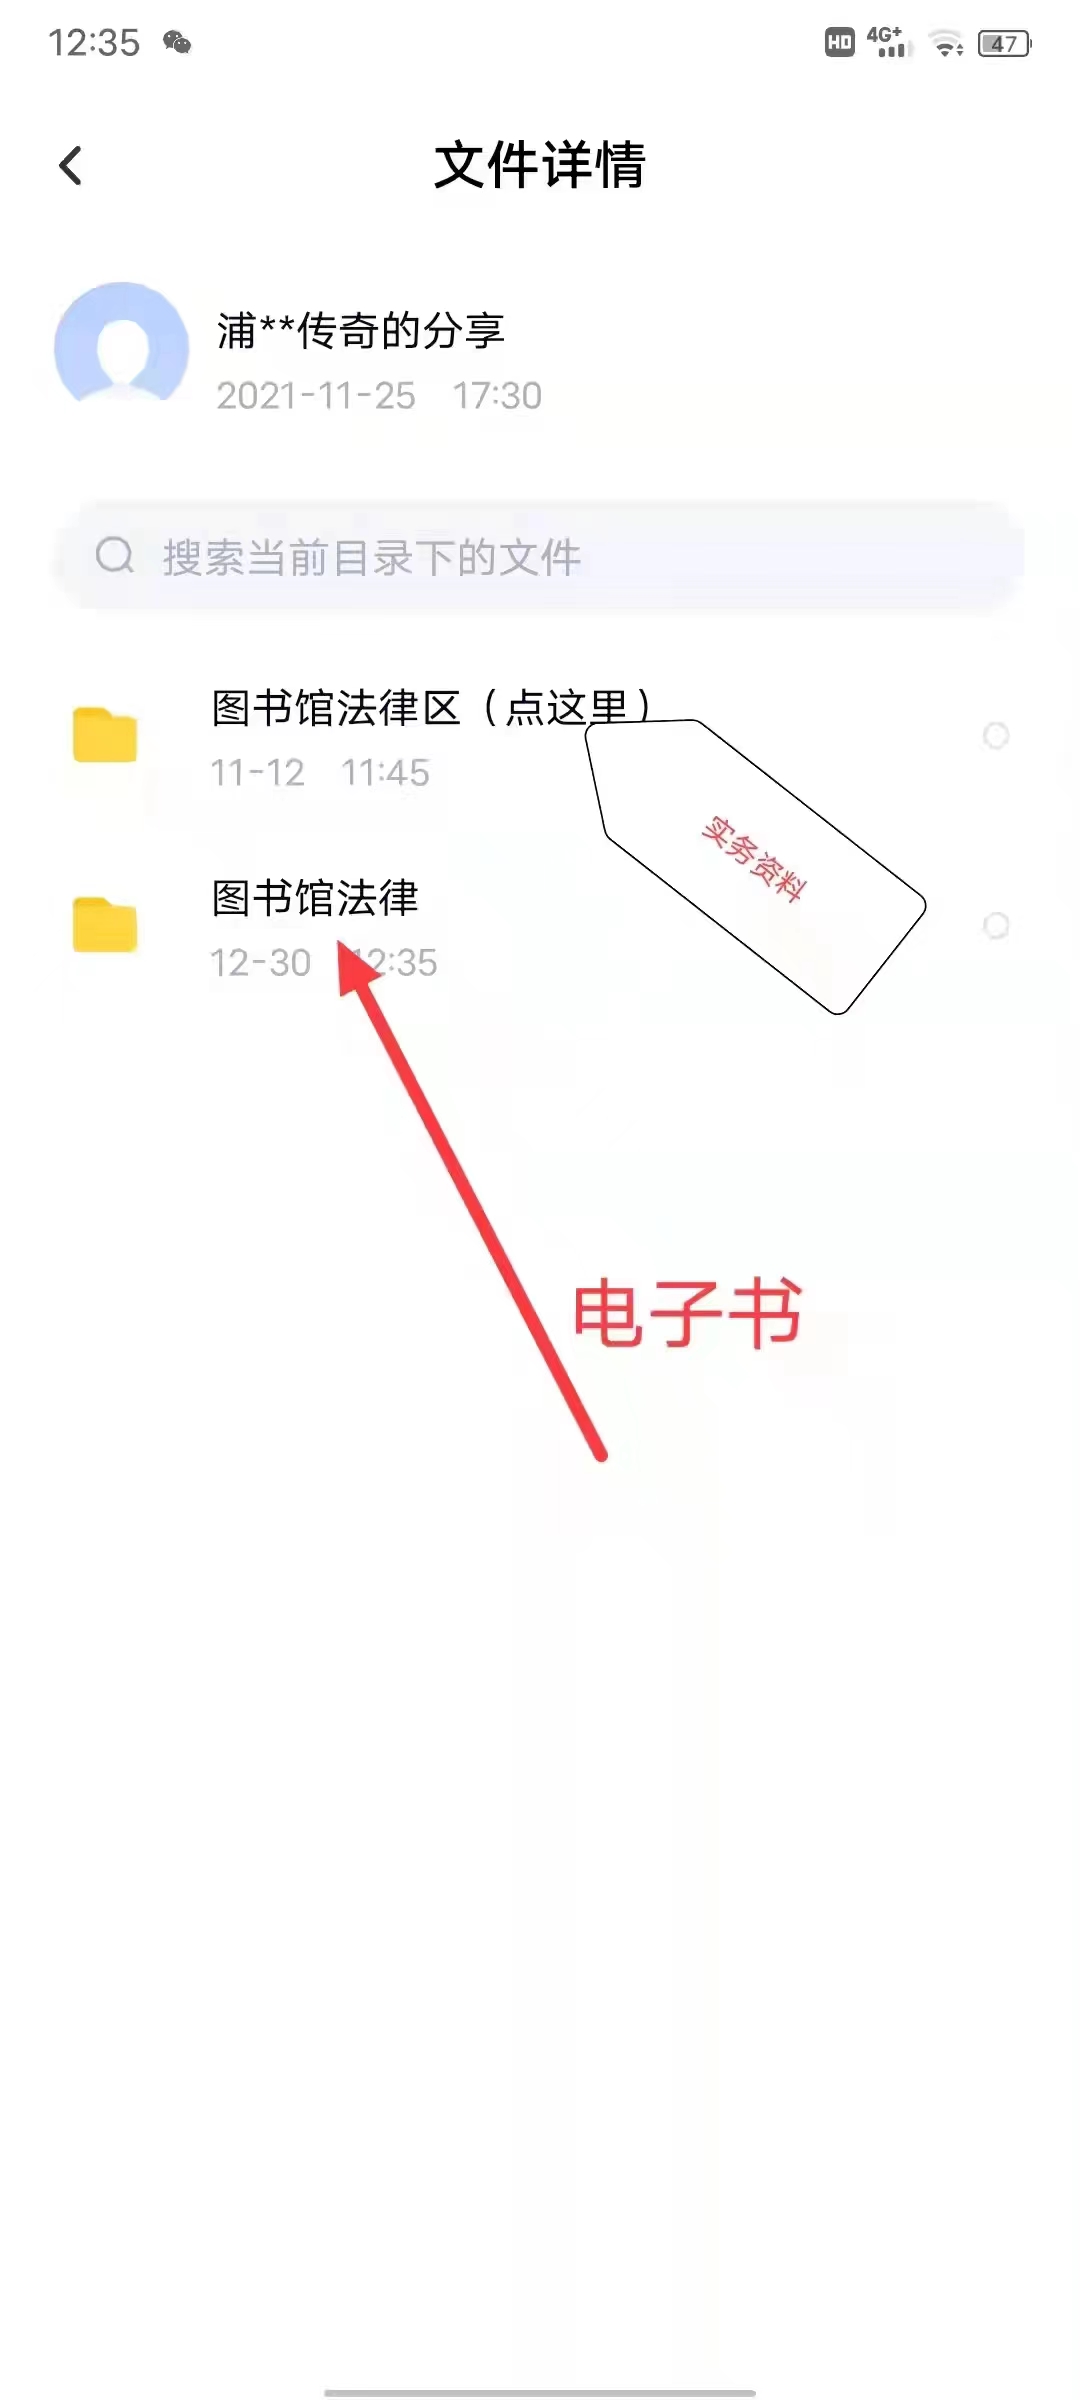 【法律】【PDF】327 中国行政诉讼案例精读 202204 王敬波